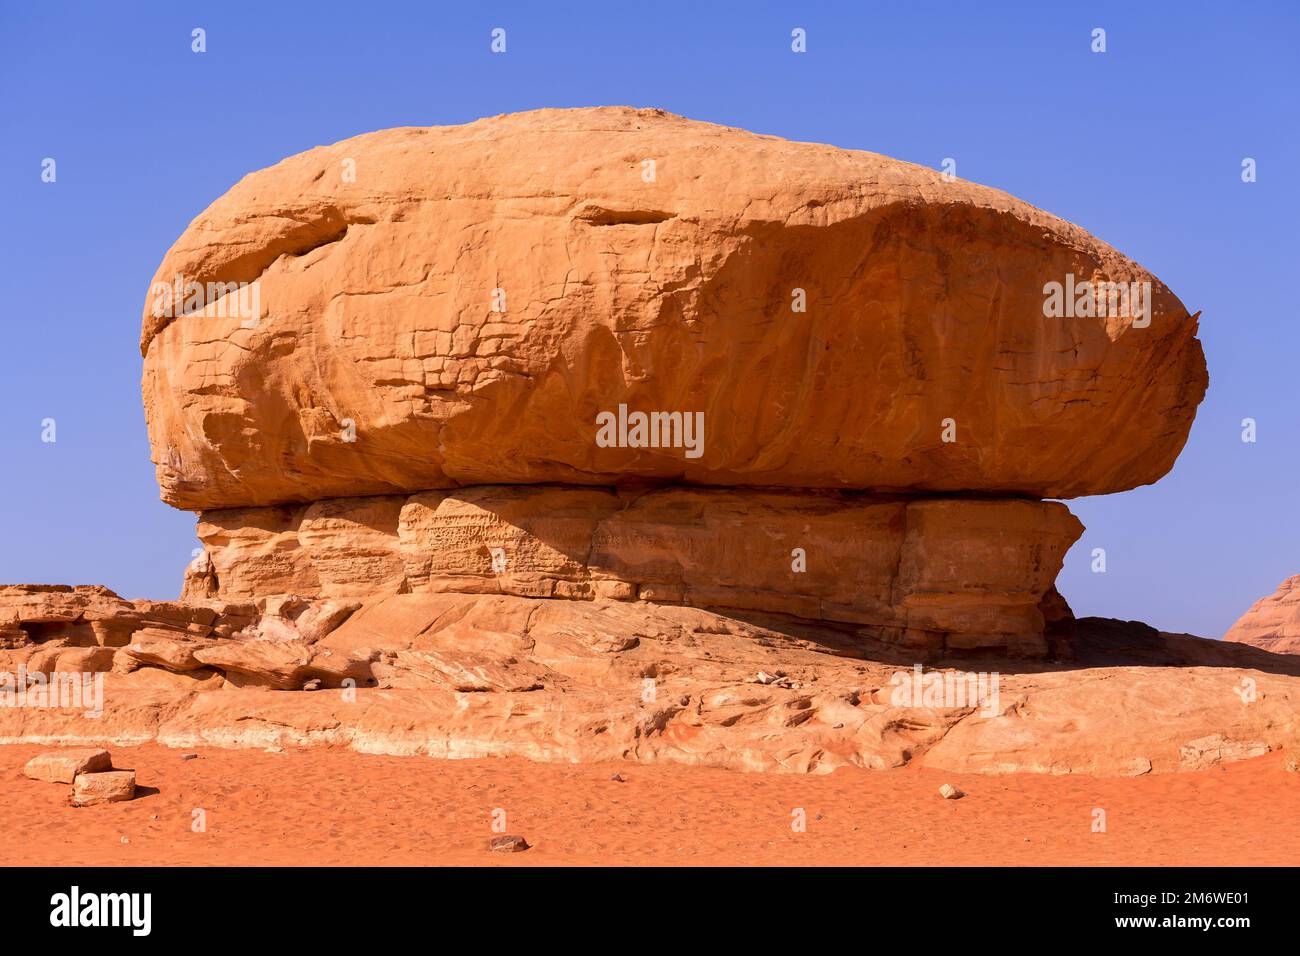 Mushroom rock in Wadi Rum, Jordan, Middle East Stock Photo